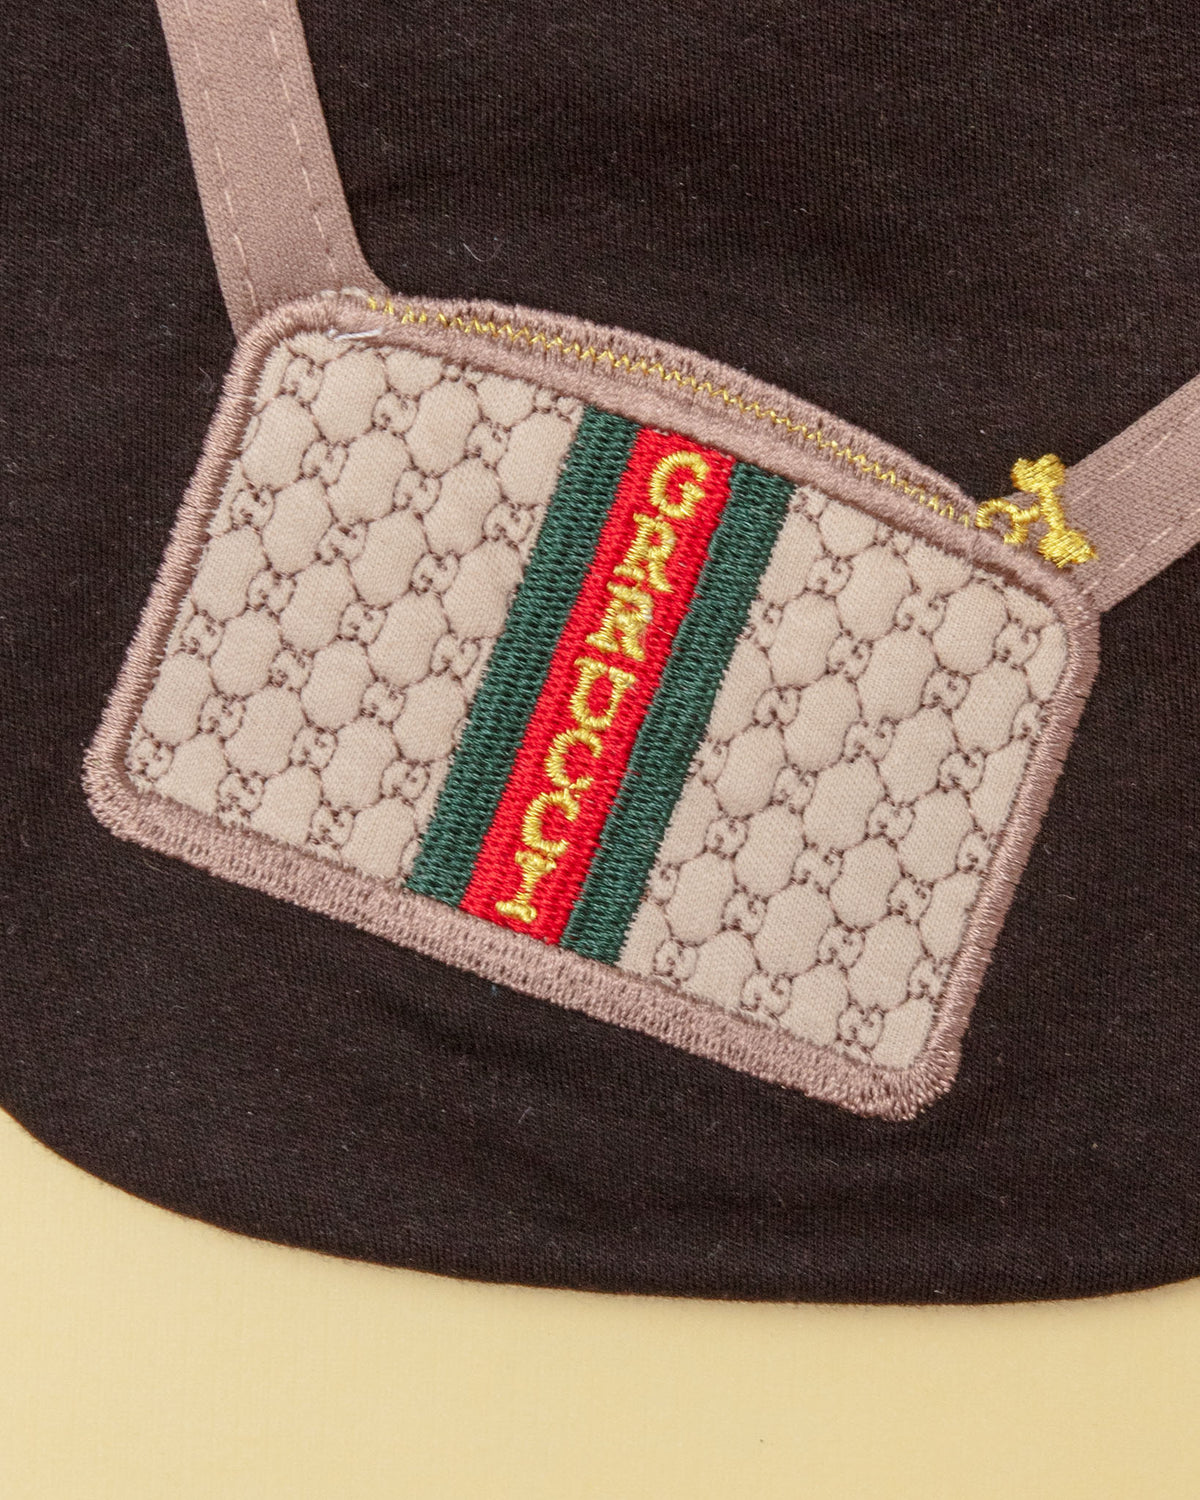 Designer-inspired Grrucci Embroidered Dog T-Shirt